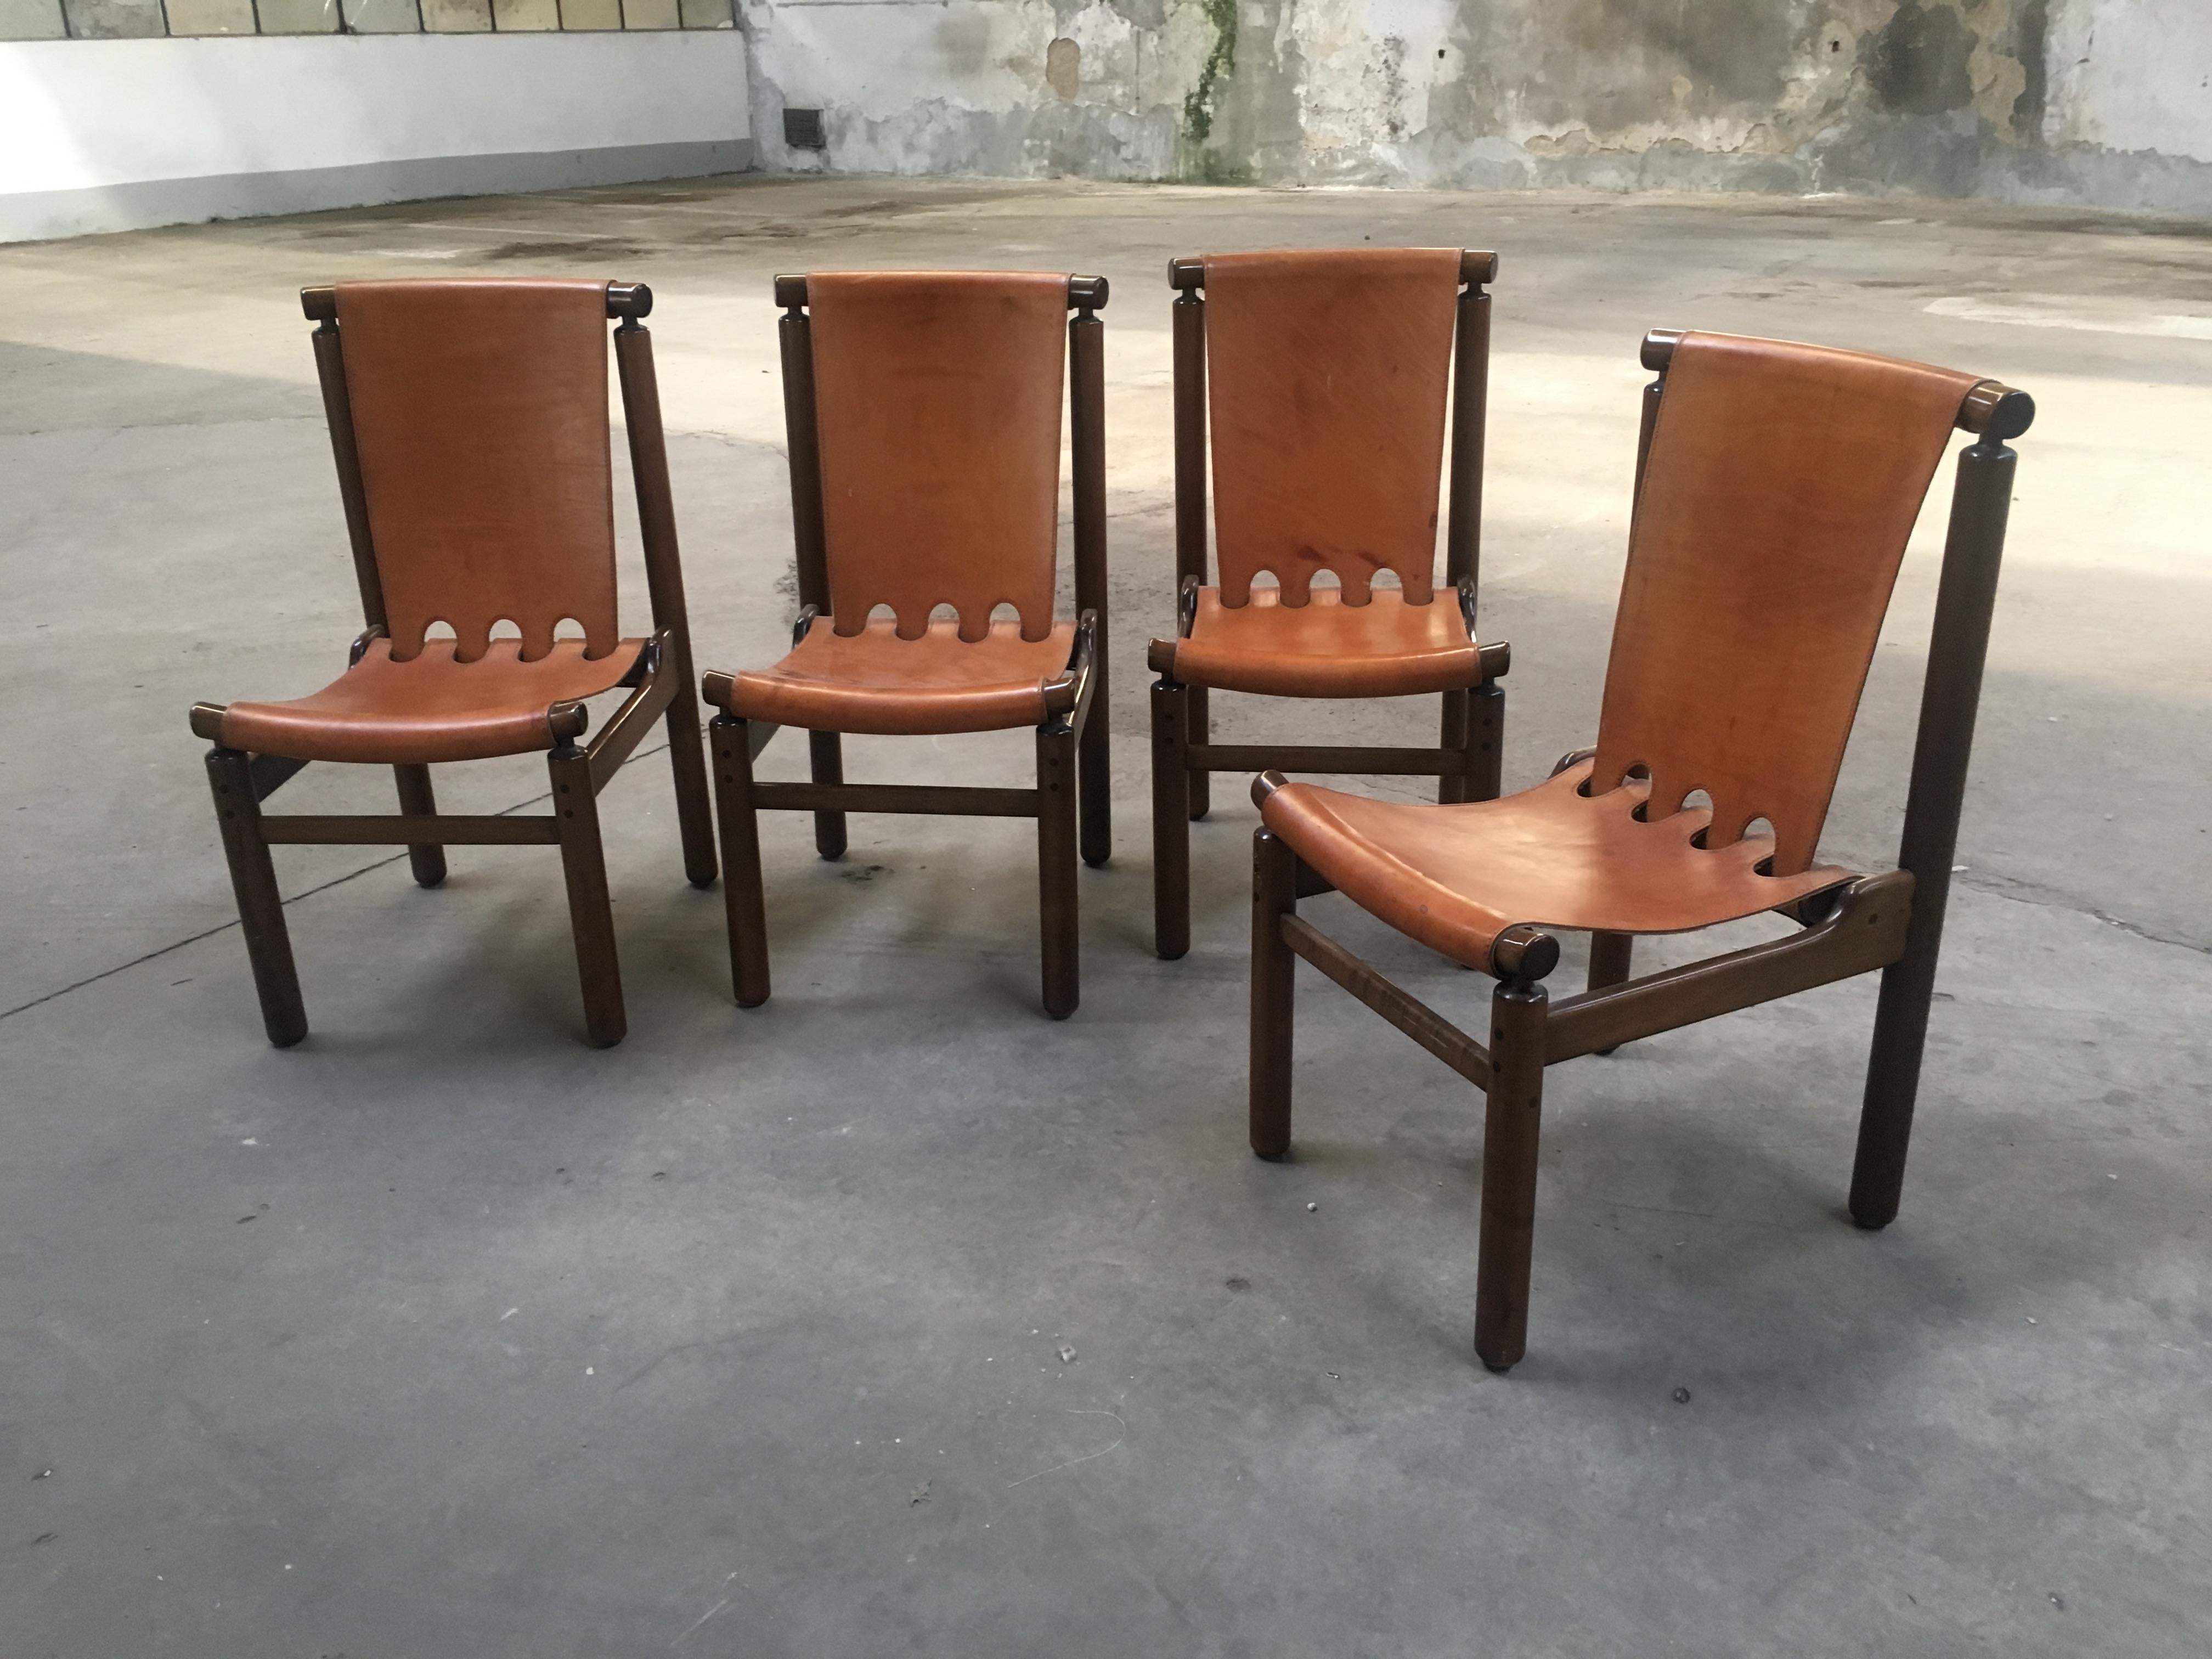 Ensemble de 4 chaises de salle à manger en cuir cognac et bois de hêtre foncé par Ilmari Tapiovaara pour La Permanente Mobili Beeche.
Les chaises sont en très bon état.